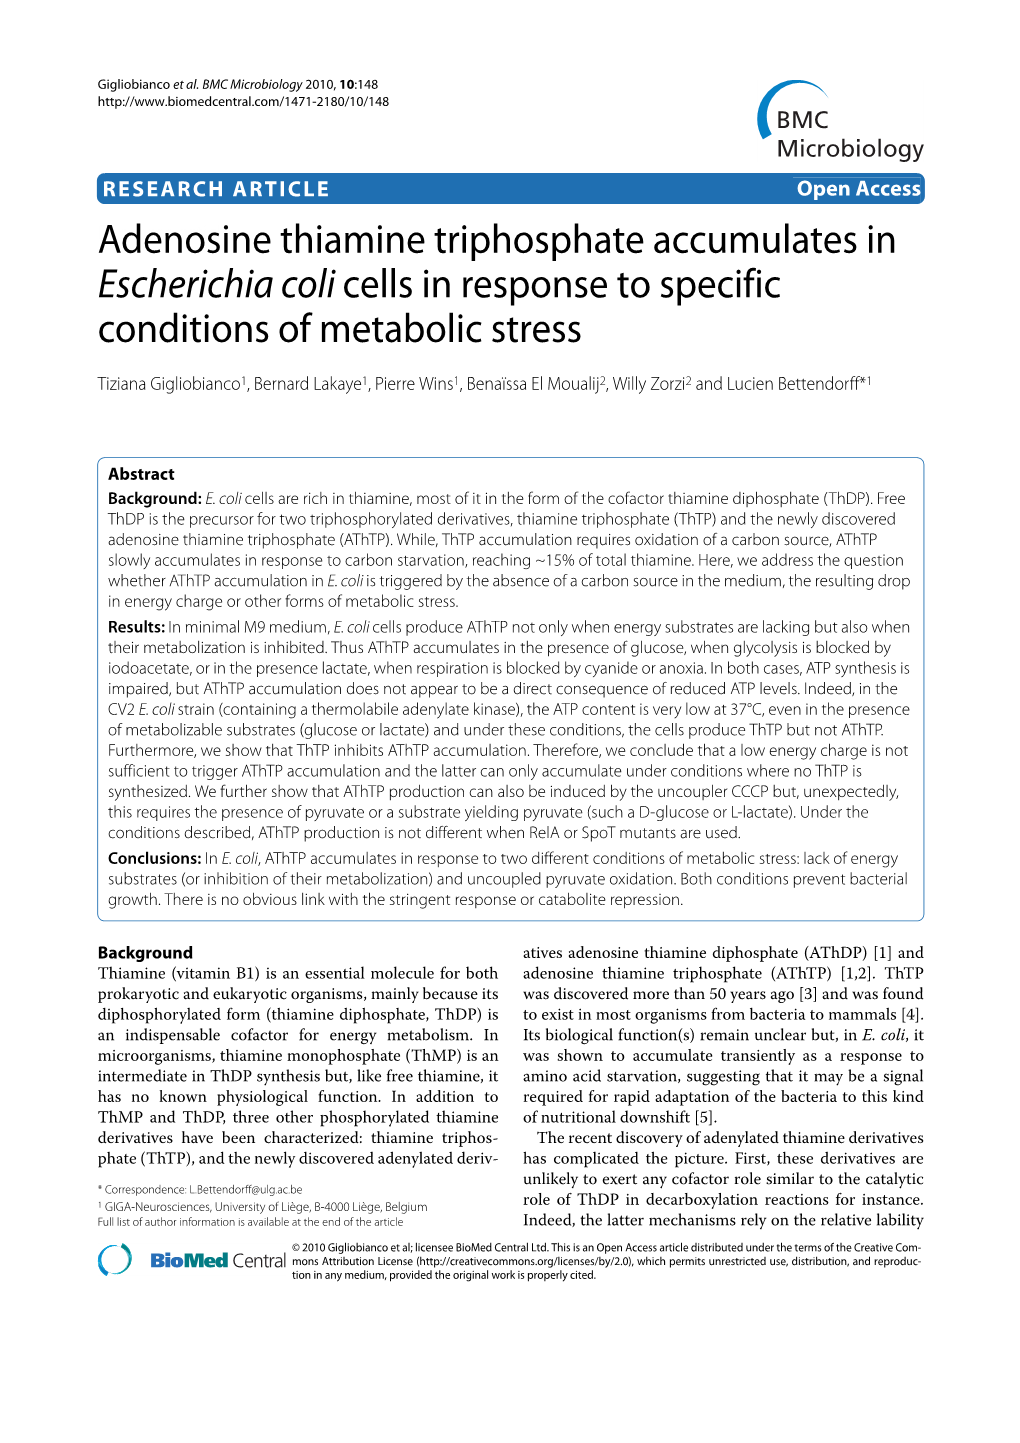 Adenosine Thiamine Triphosphate Accumulates in Escherichia